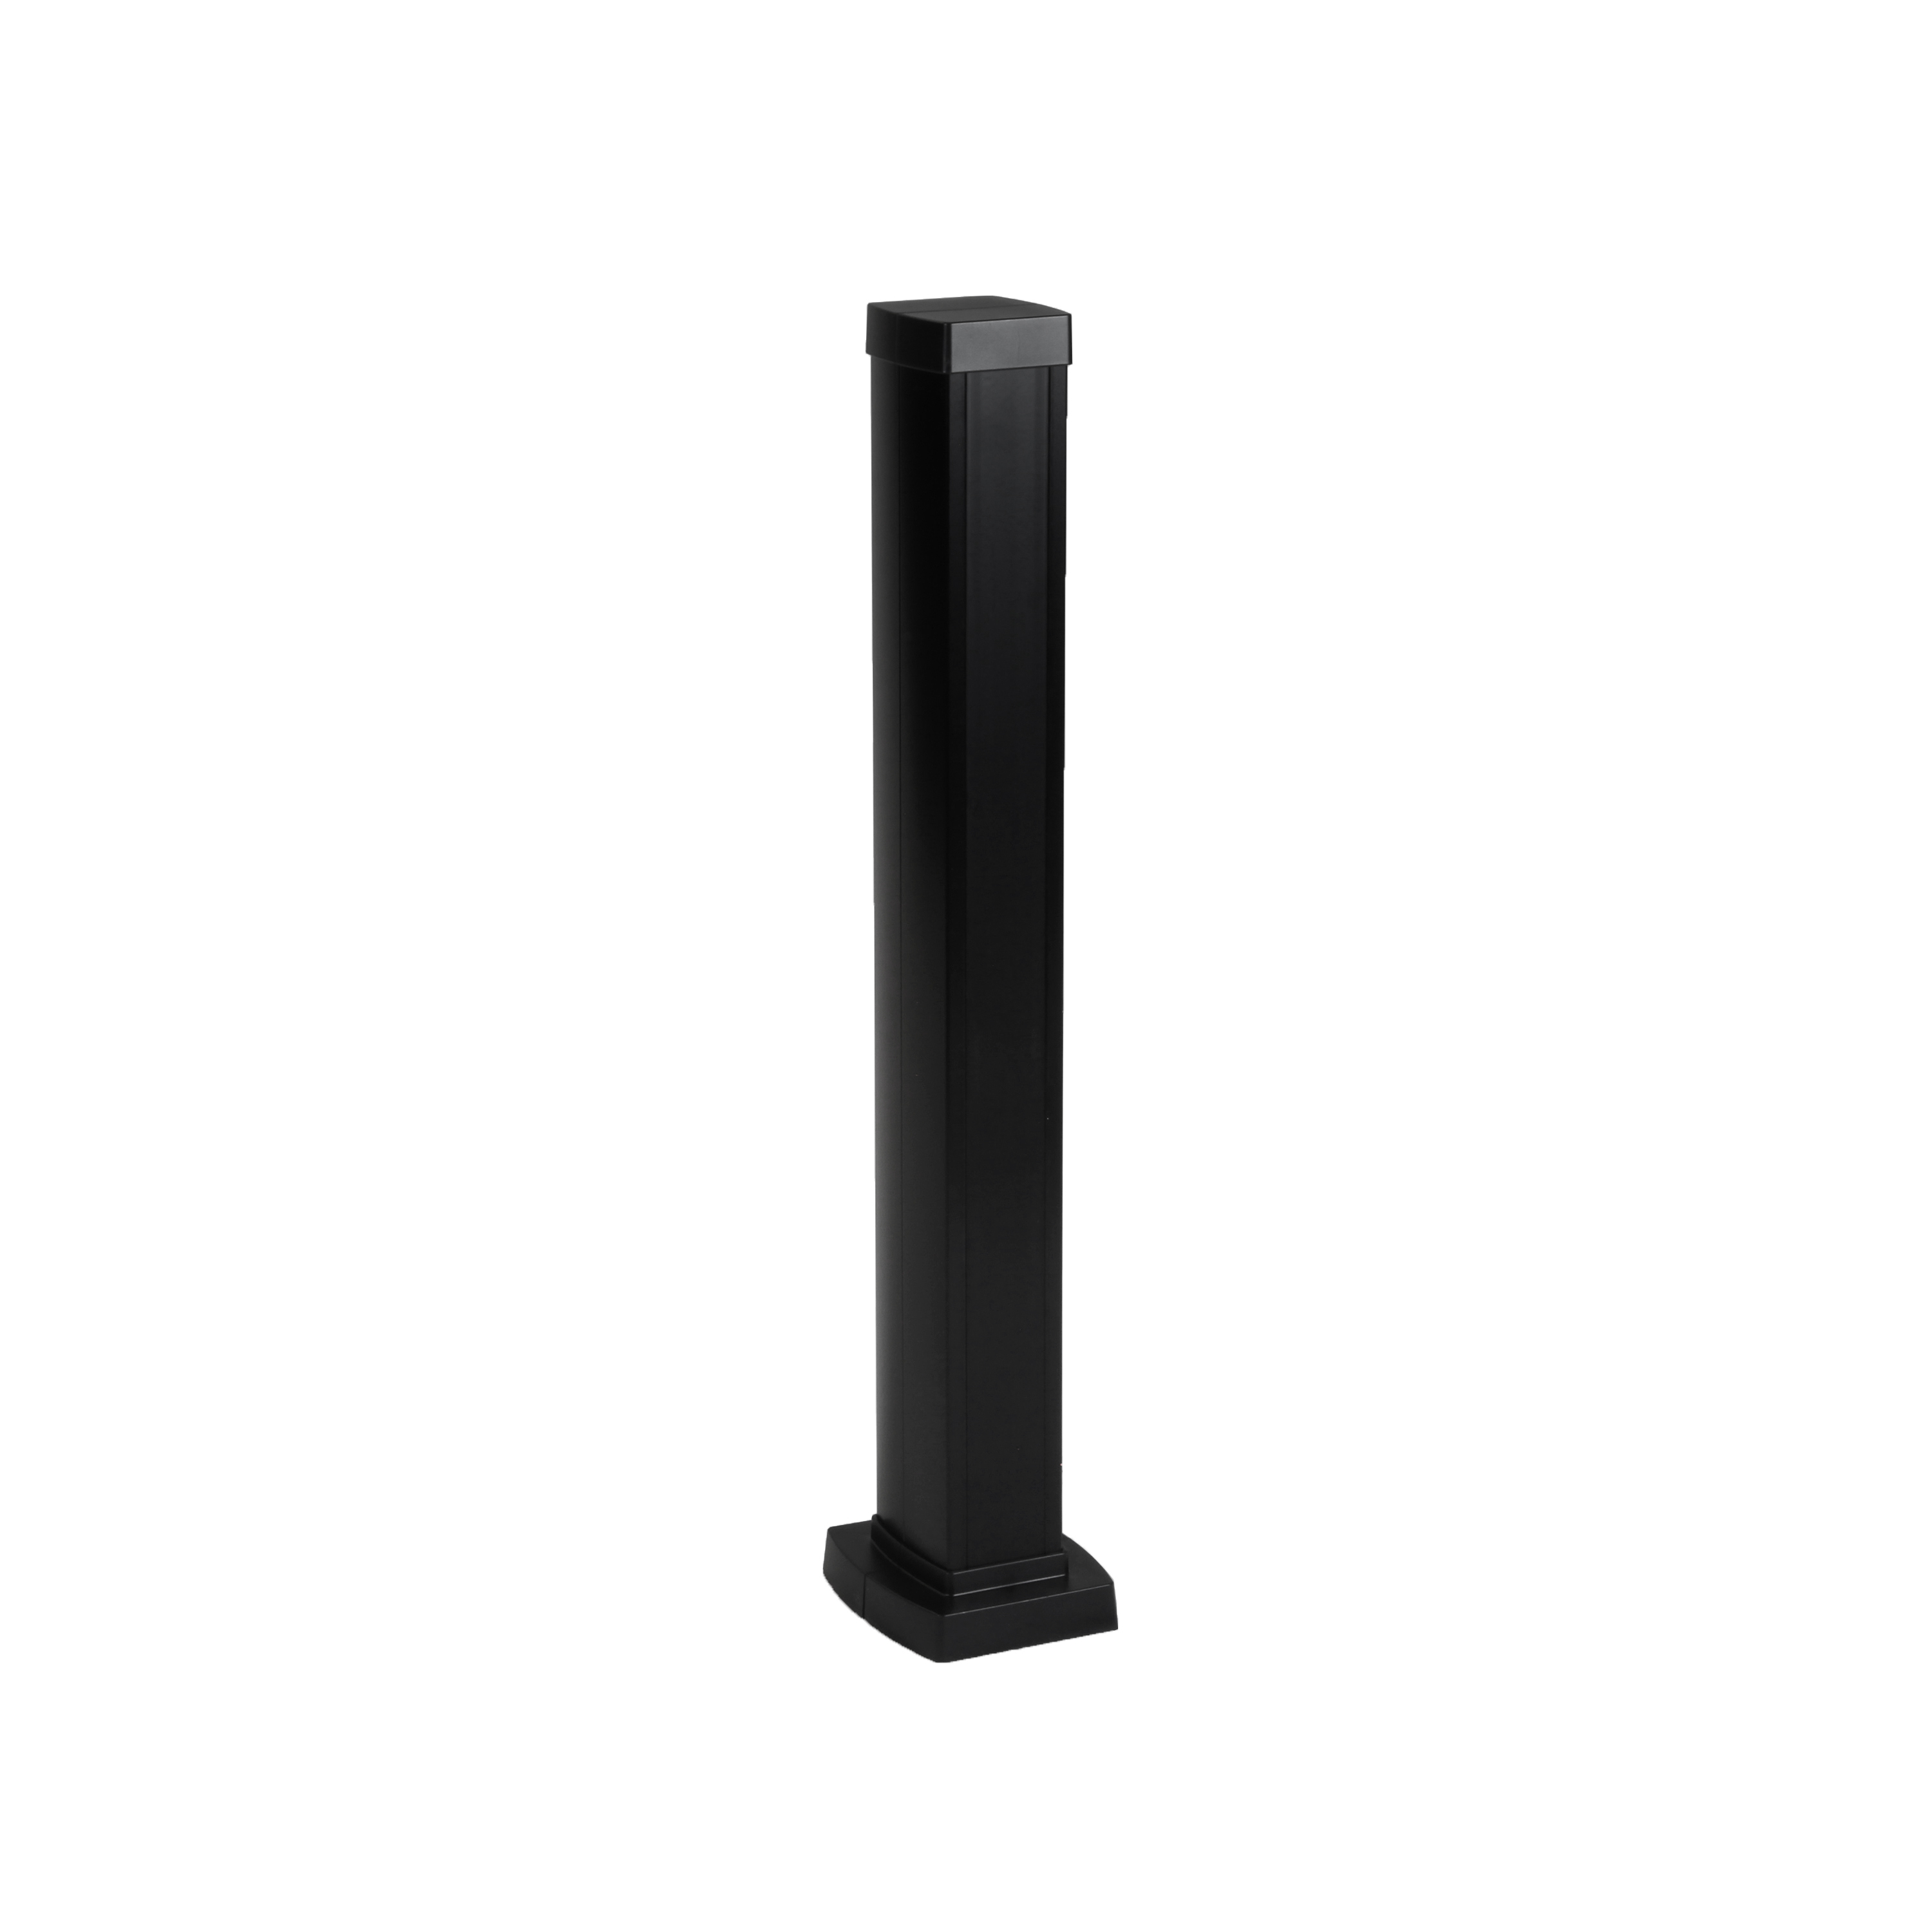 Snap-On мини-колонна алюминиевая с крышкой из пластика 1 секция, высота 0,68 метра, цвет черный 653005 Legrand